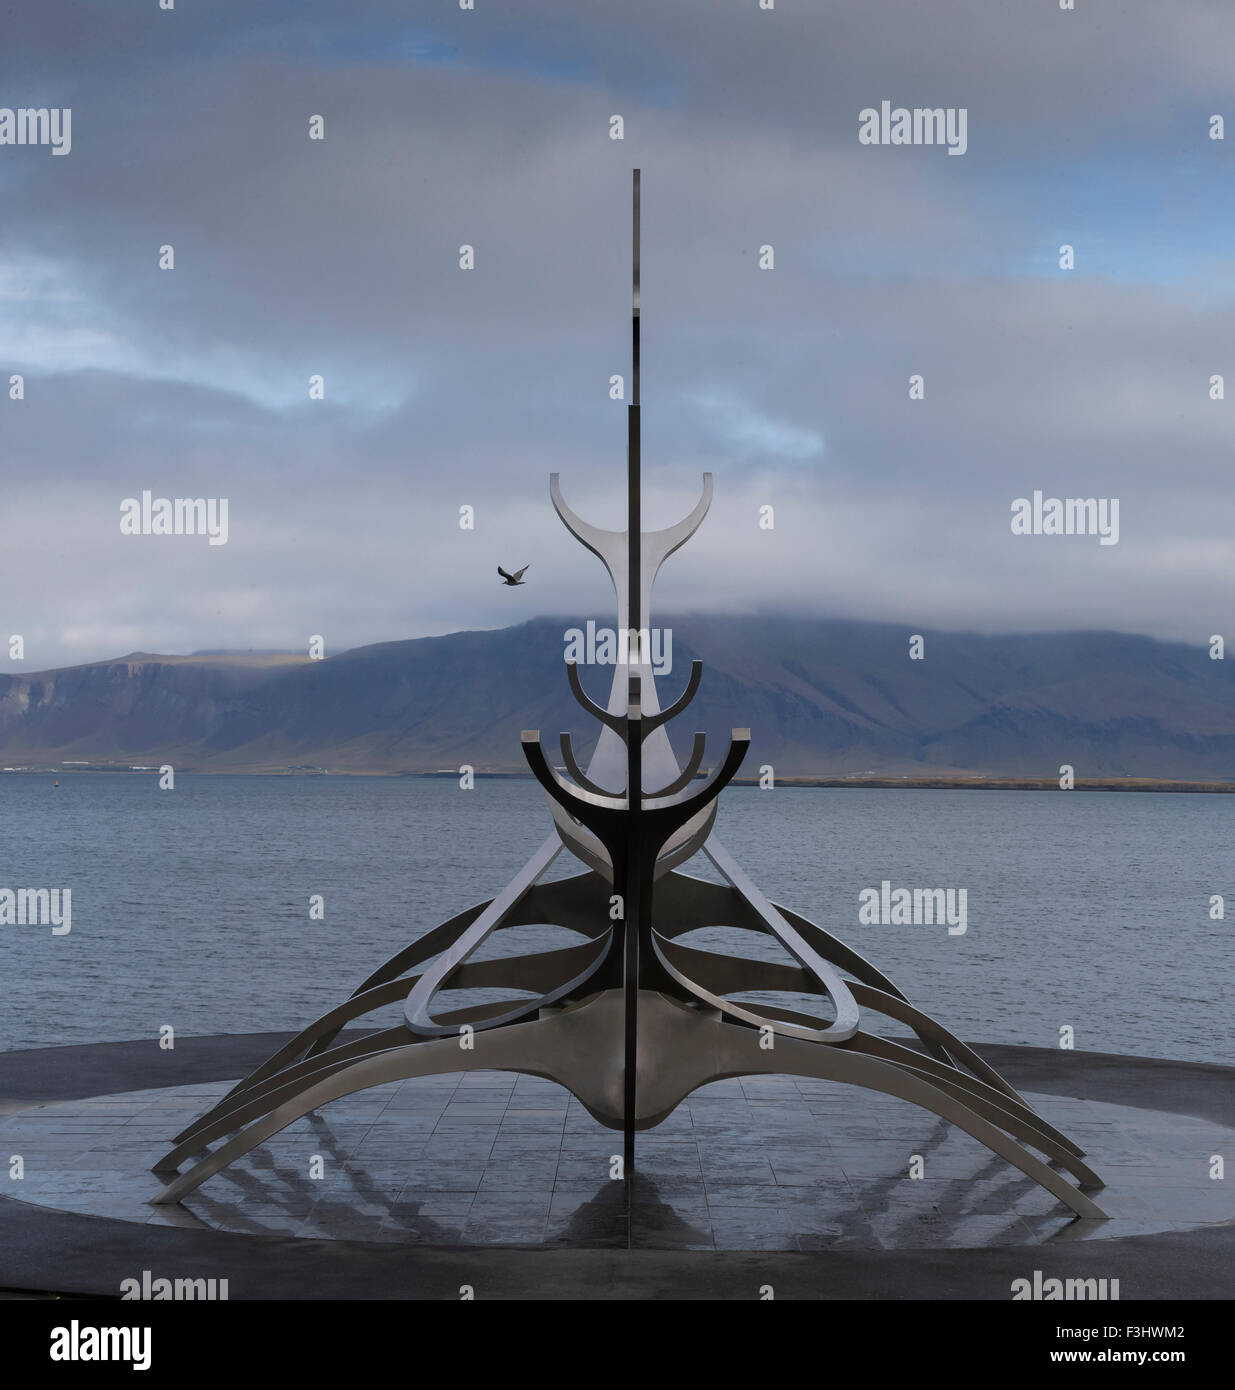 Le soleil Voyager sculpture par Jón Gunnar Árnason à Reykjavik, Islande. Un cadre en acier poli contre un blue cloudy sky Banque D'Images